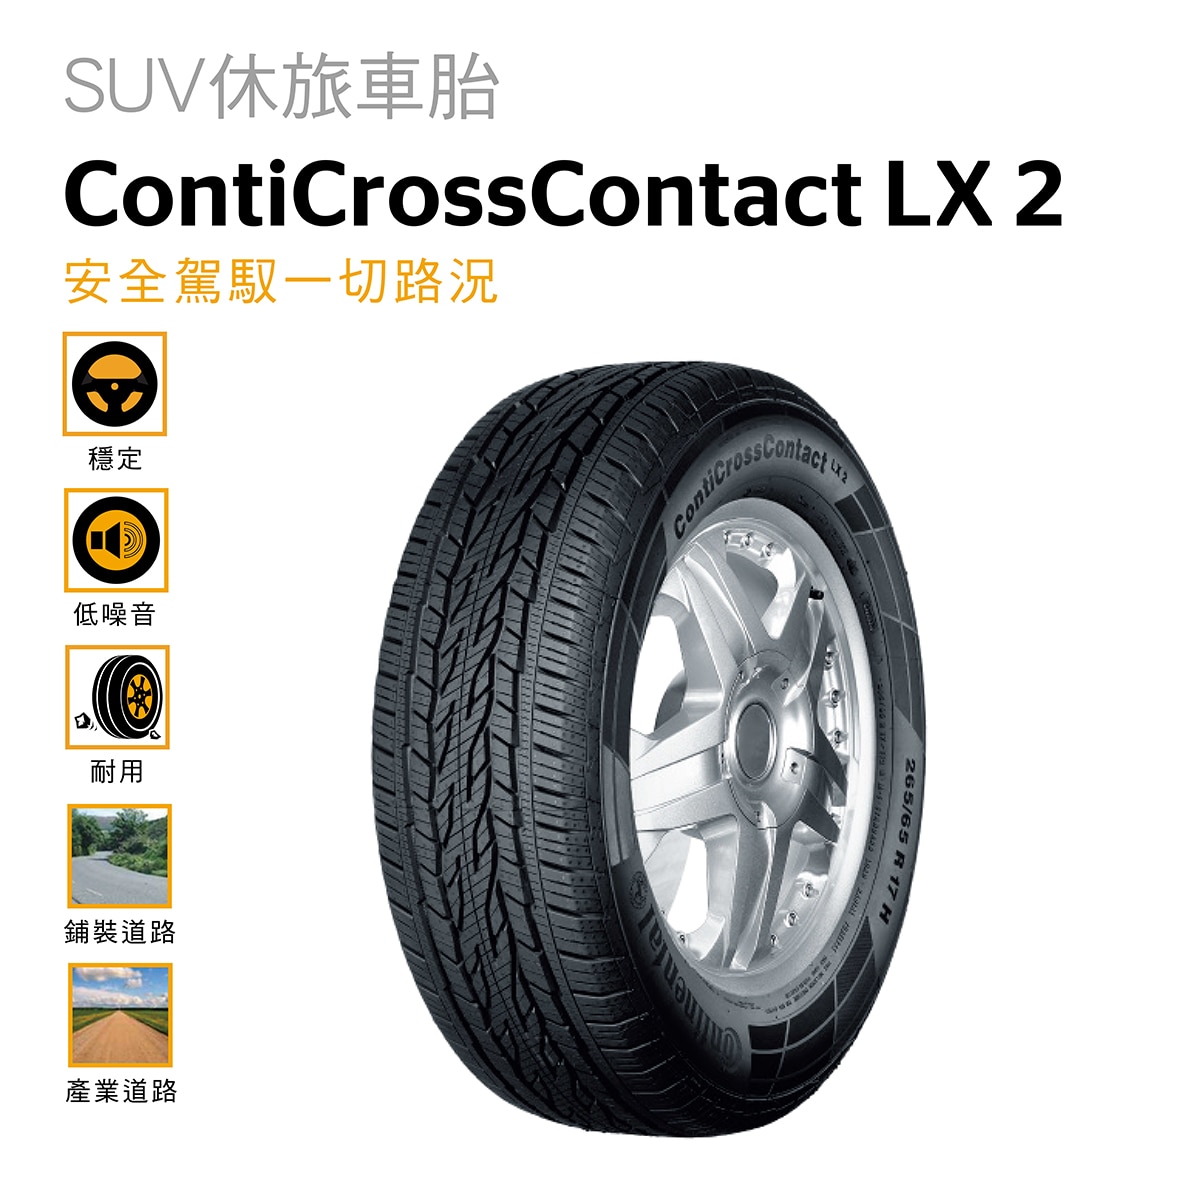 Continental 馬牌輪胎Conti Cross Contact LX 2 適用於休旅車和輕度越野車款，在提供絕佳的乾濕地煞車性能與操控特性下，同時兼具了降低噪音的功能。